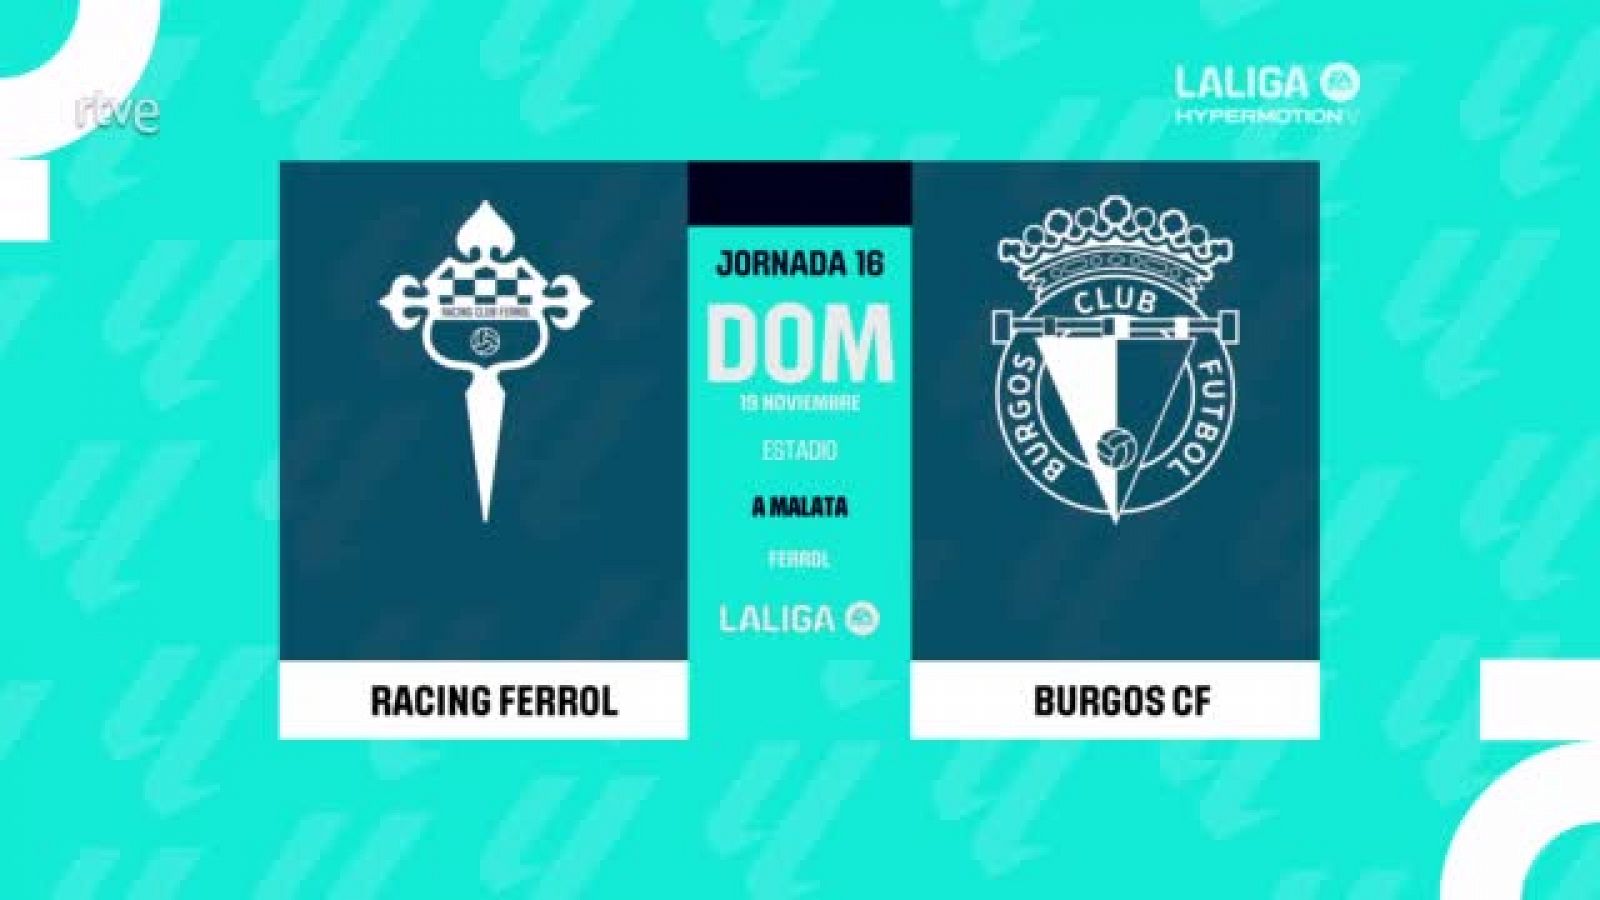 Cronología de racing ferrol contra burgos club de fútbol